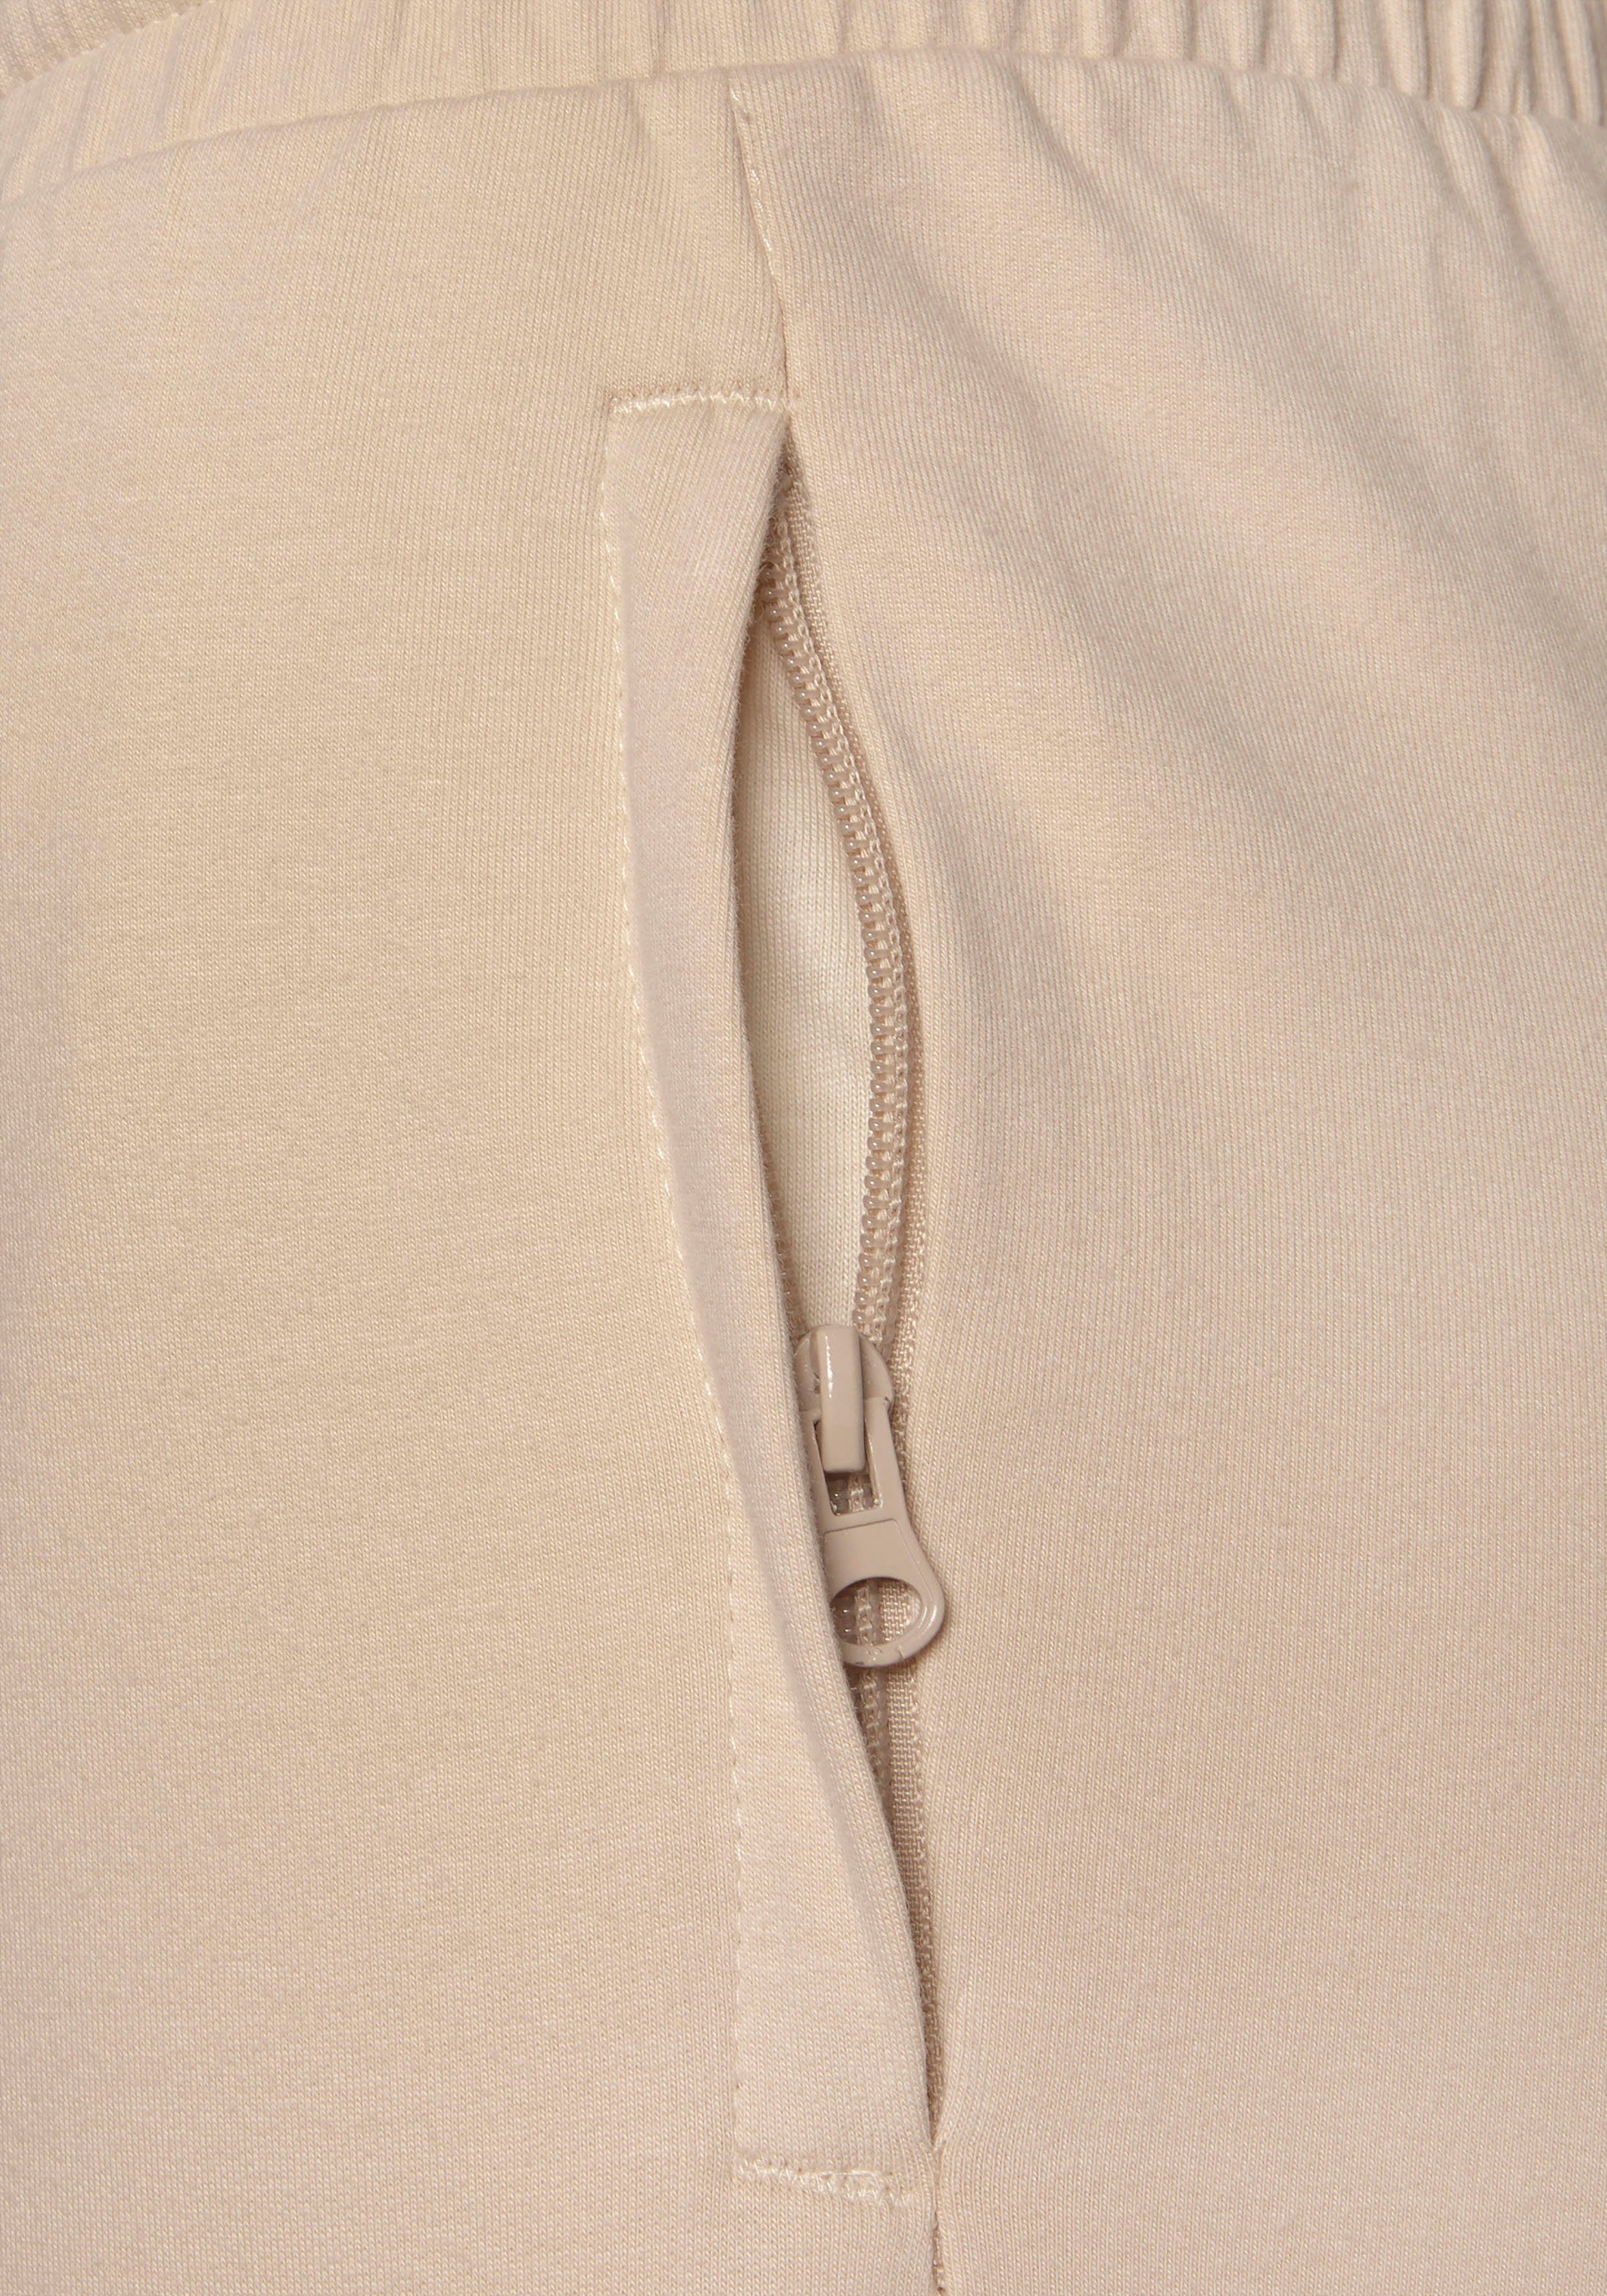 Loungewear Homewearhose beige Taschen, Reißverschluss Loungeanzug mit Bench.